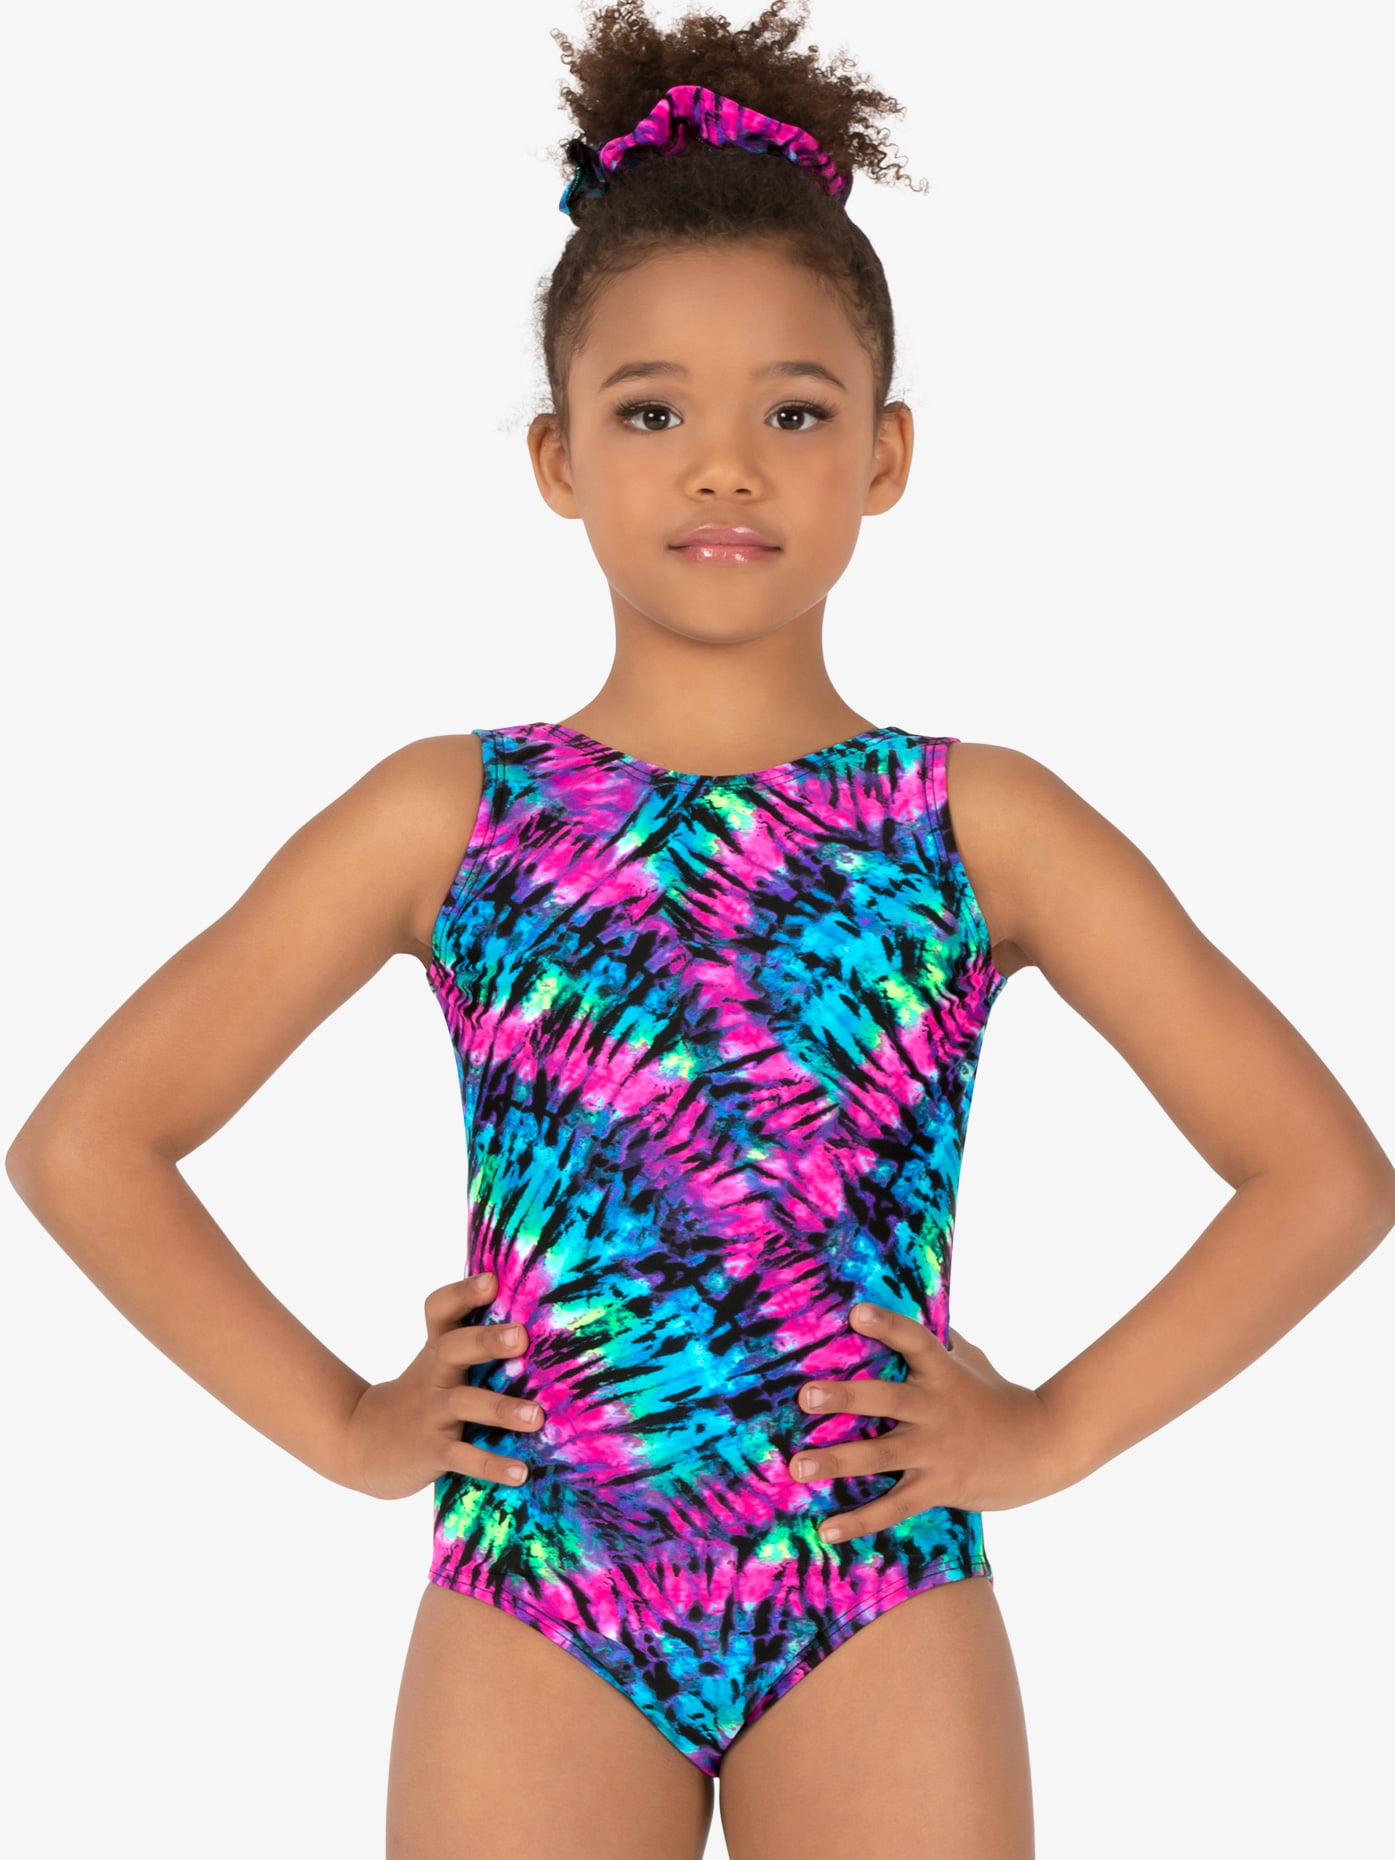 Gymnastics Leotards for Girls Sparkle Dance Unitard Biketard With Short Mermaid Rainbow Leopard Unicorn Tie Dye Pink Black 